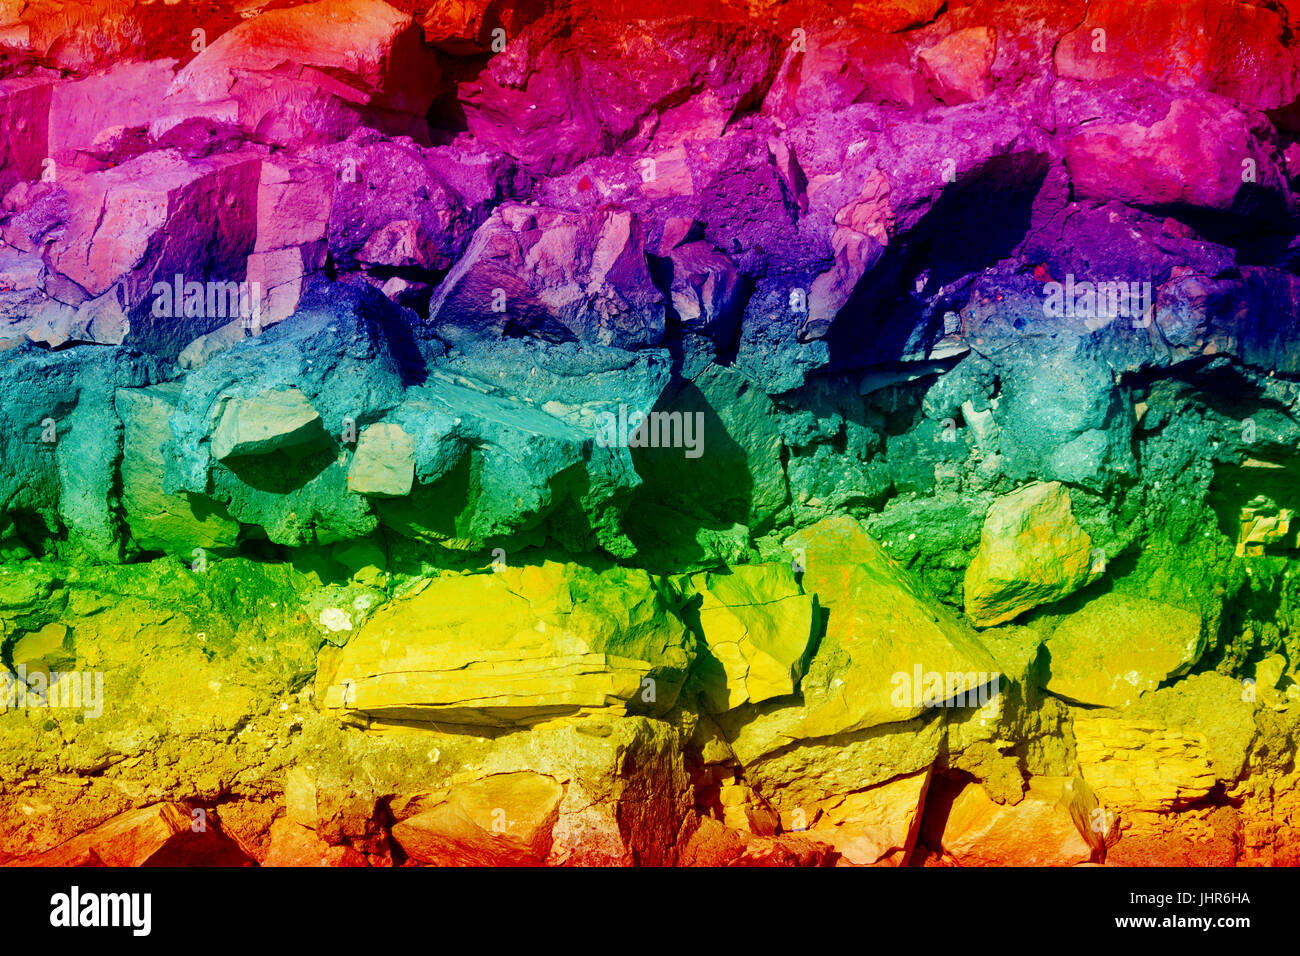 La texture des pierres colorées de couleur dans Photoshop. Banque D'Images